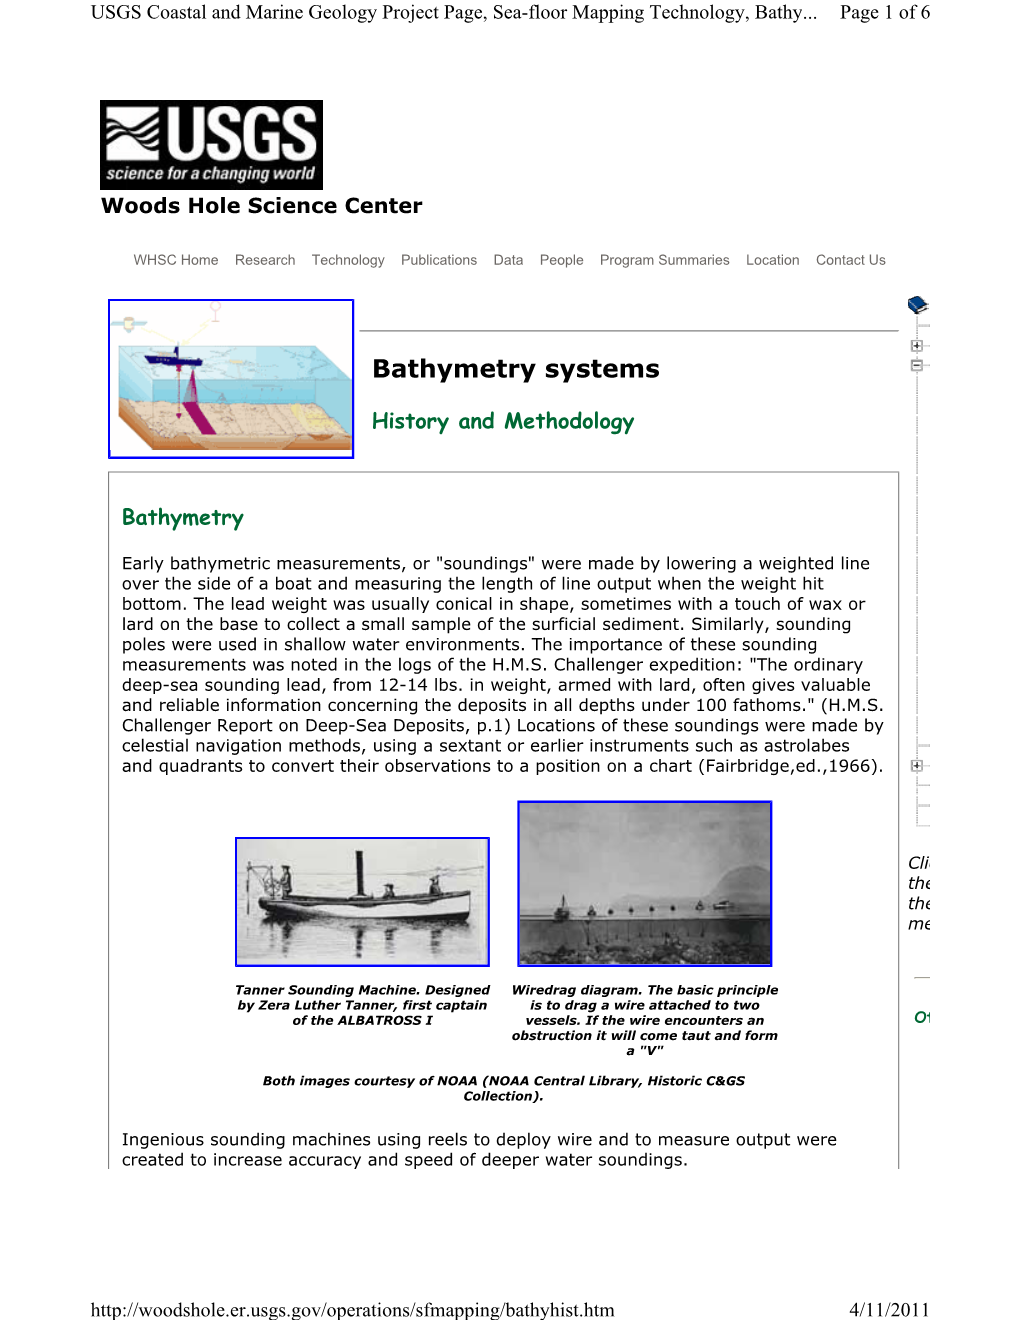 Bathymetry Systems: History & Methodology